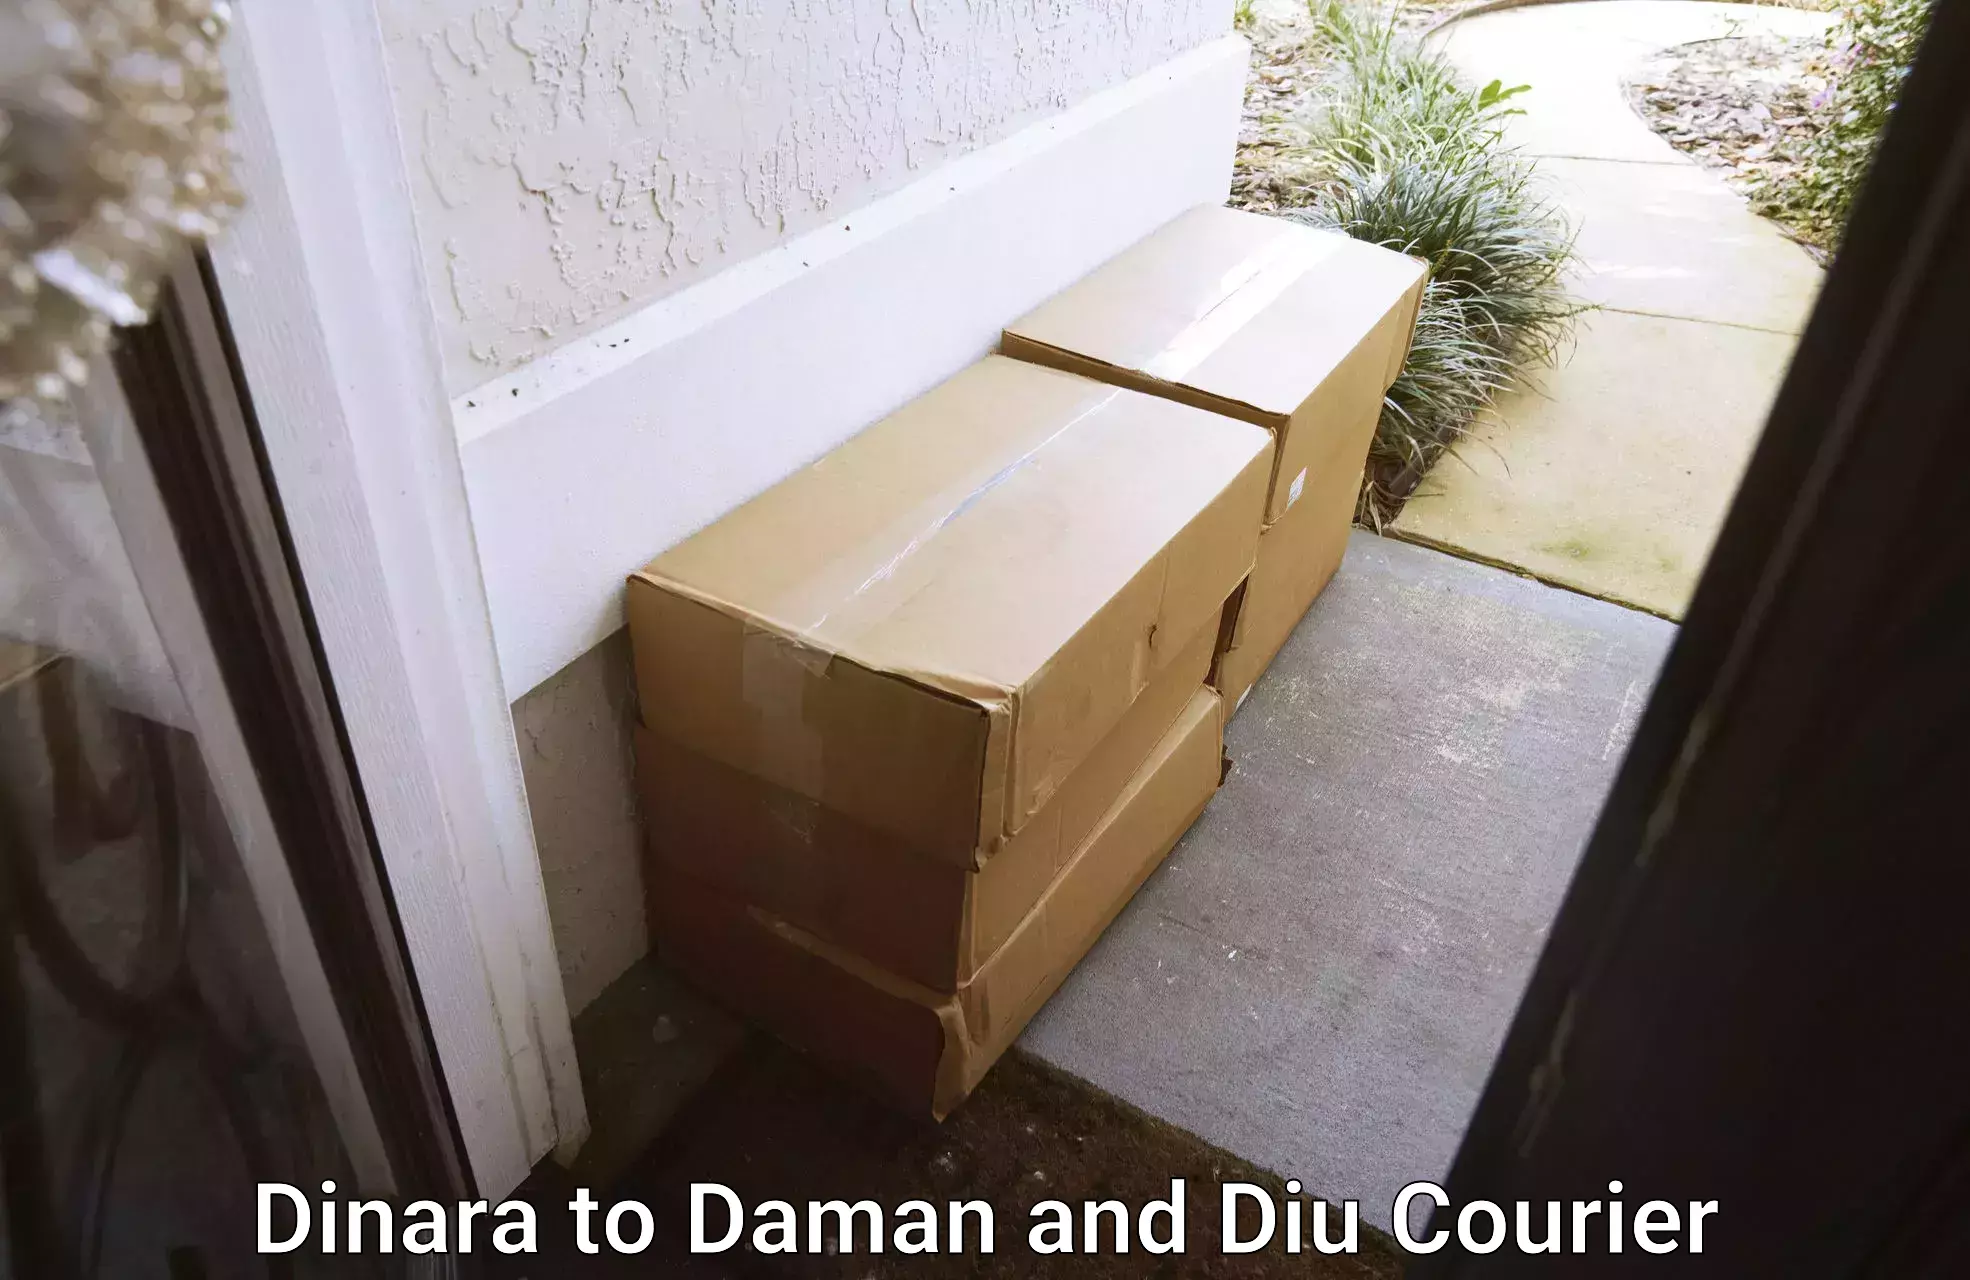 Furniture transport services Dinara to Daman and Diu